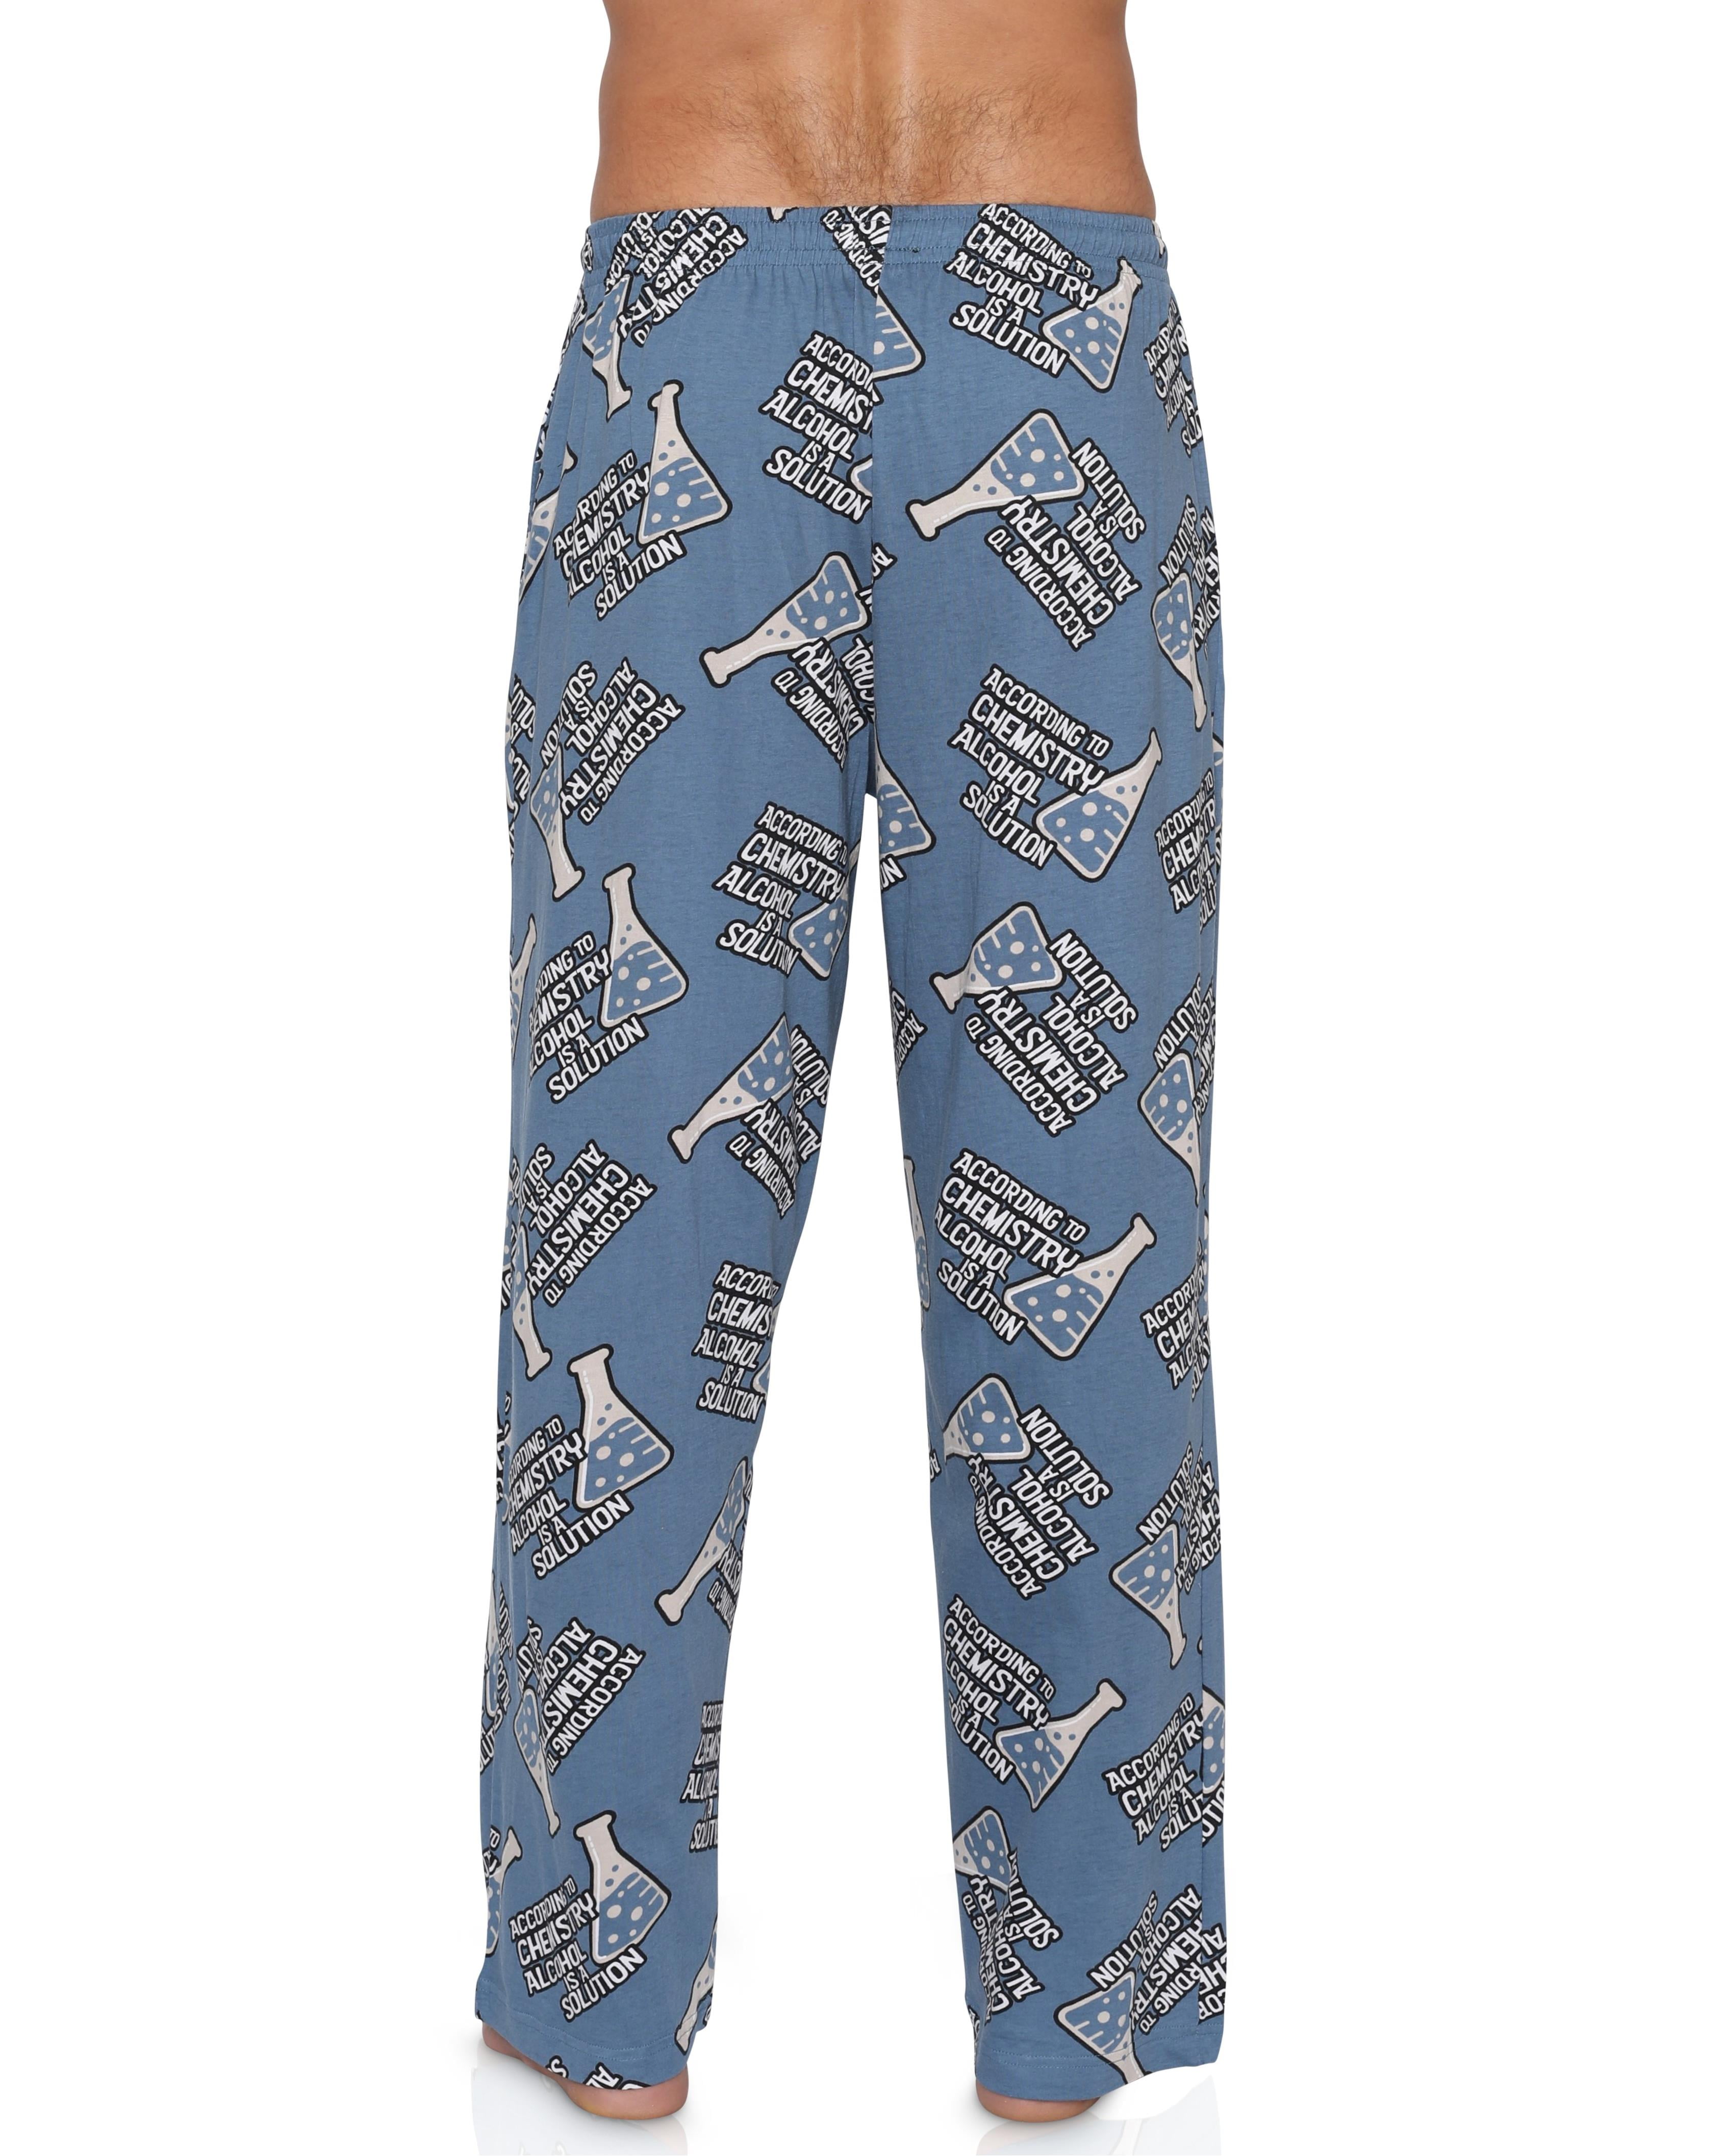 Men's Fun Lounge Pants Boxers Printed Pajama Graphic Pants Loungewear ...